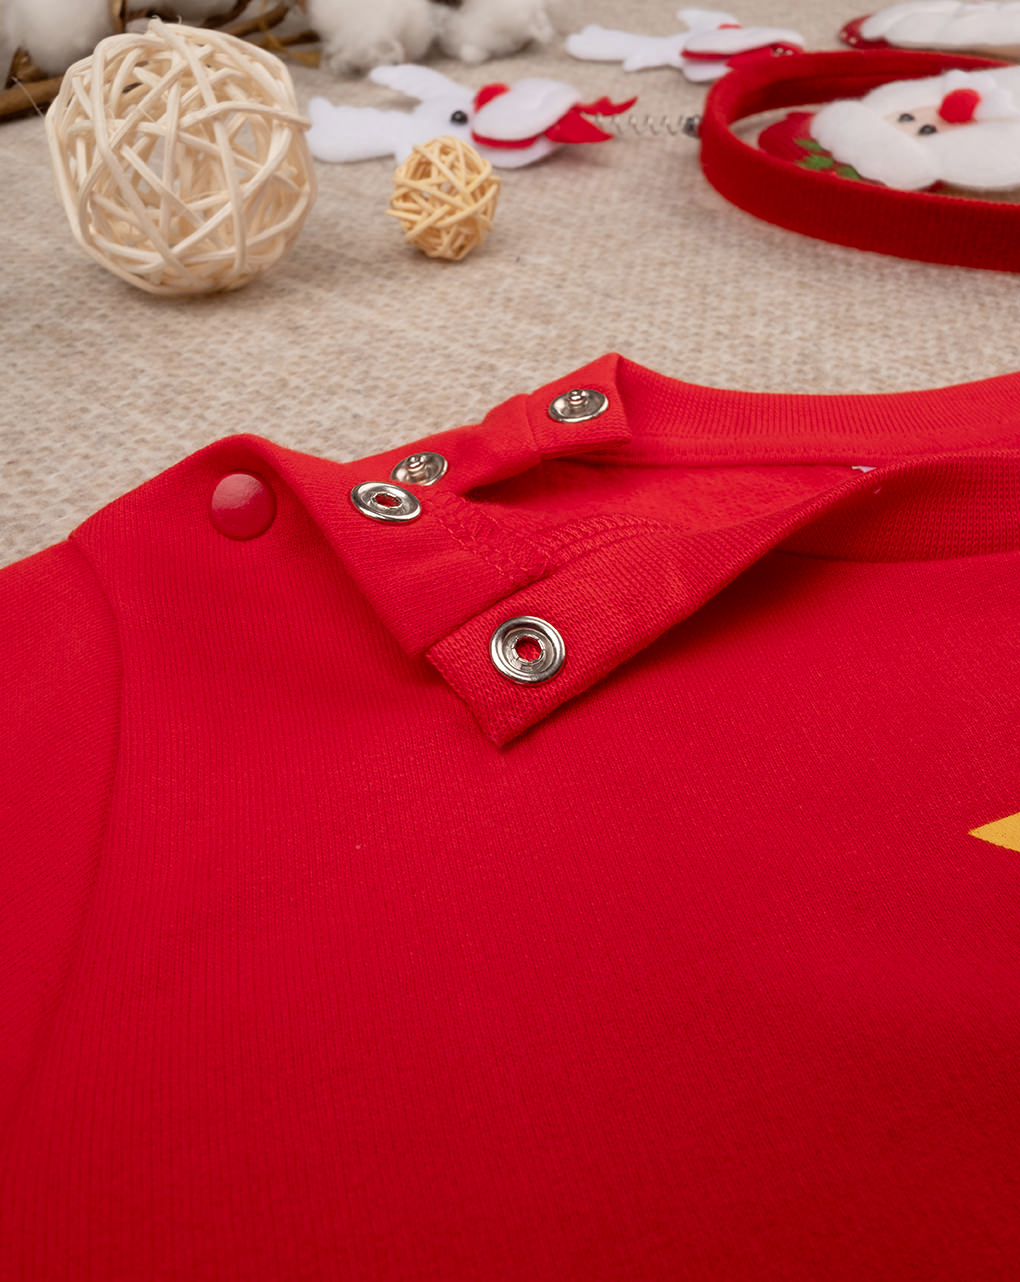 Pijama de bebé rojo "navidad - Prénatal